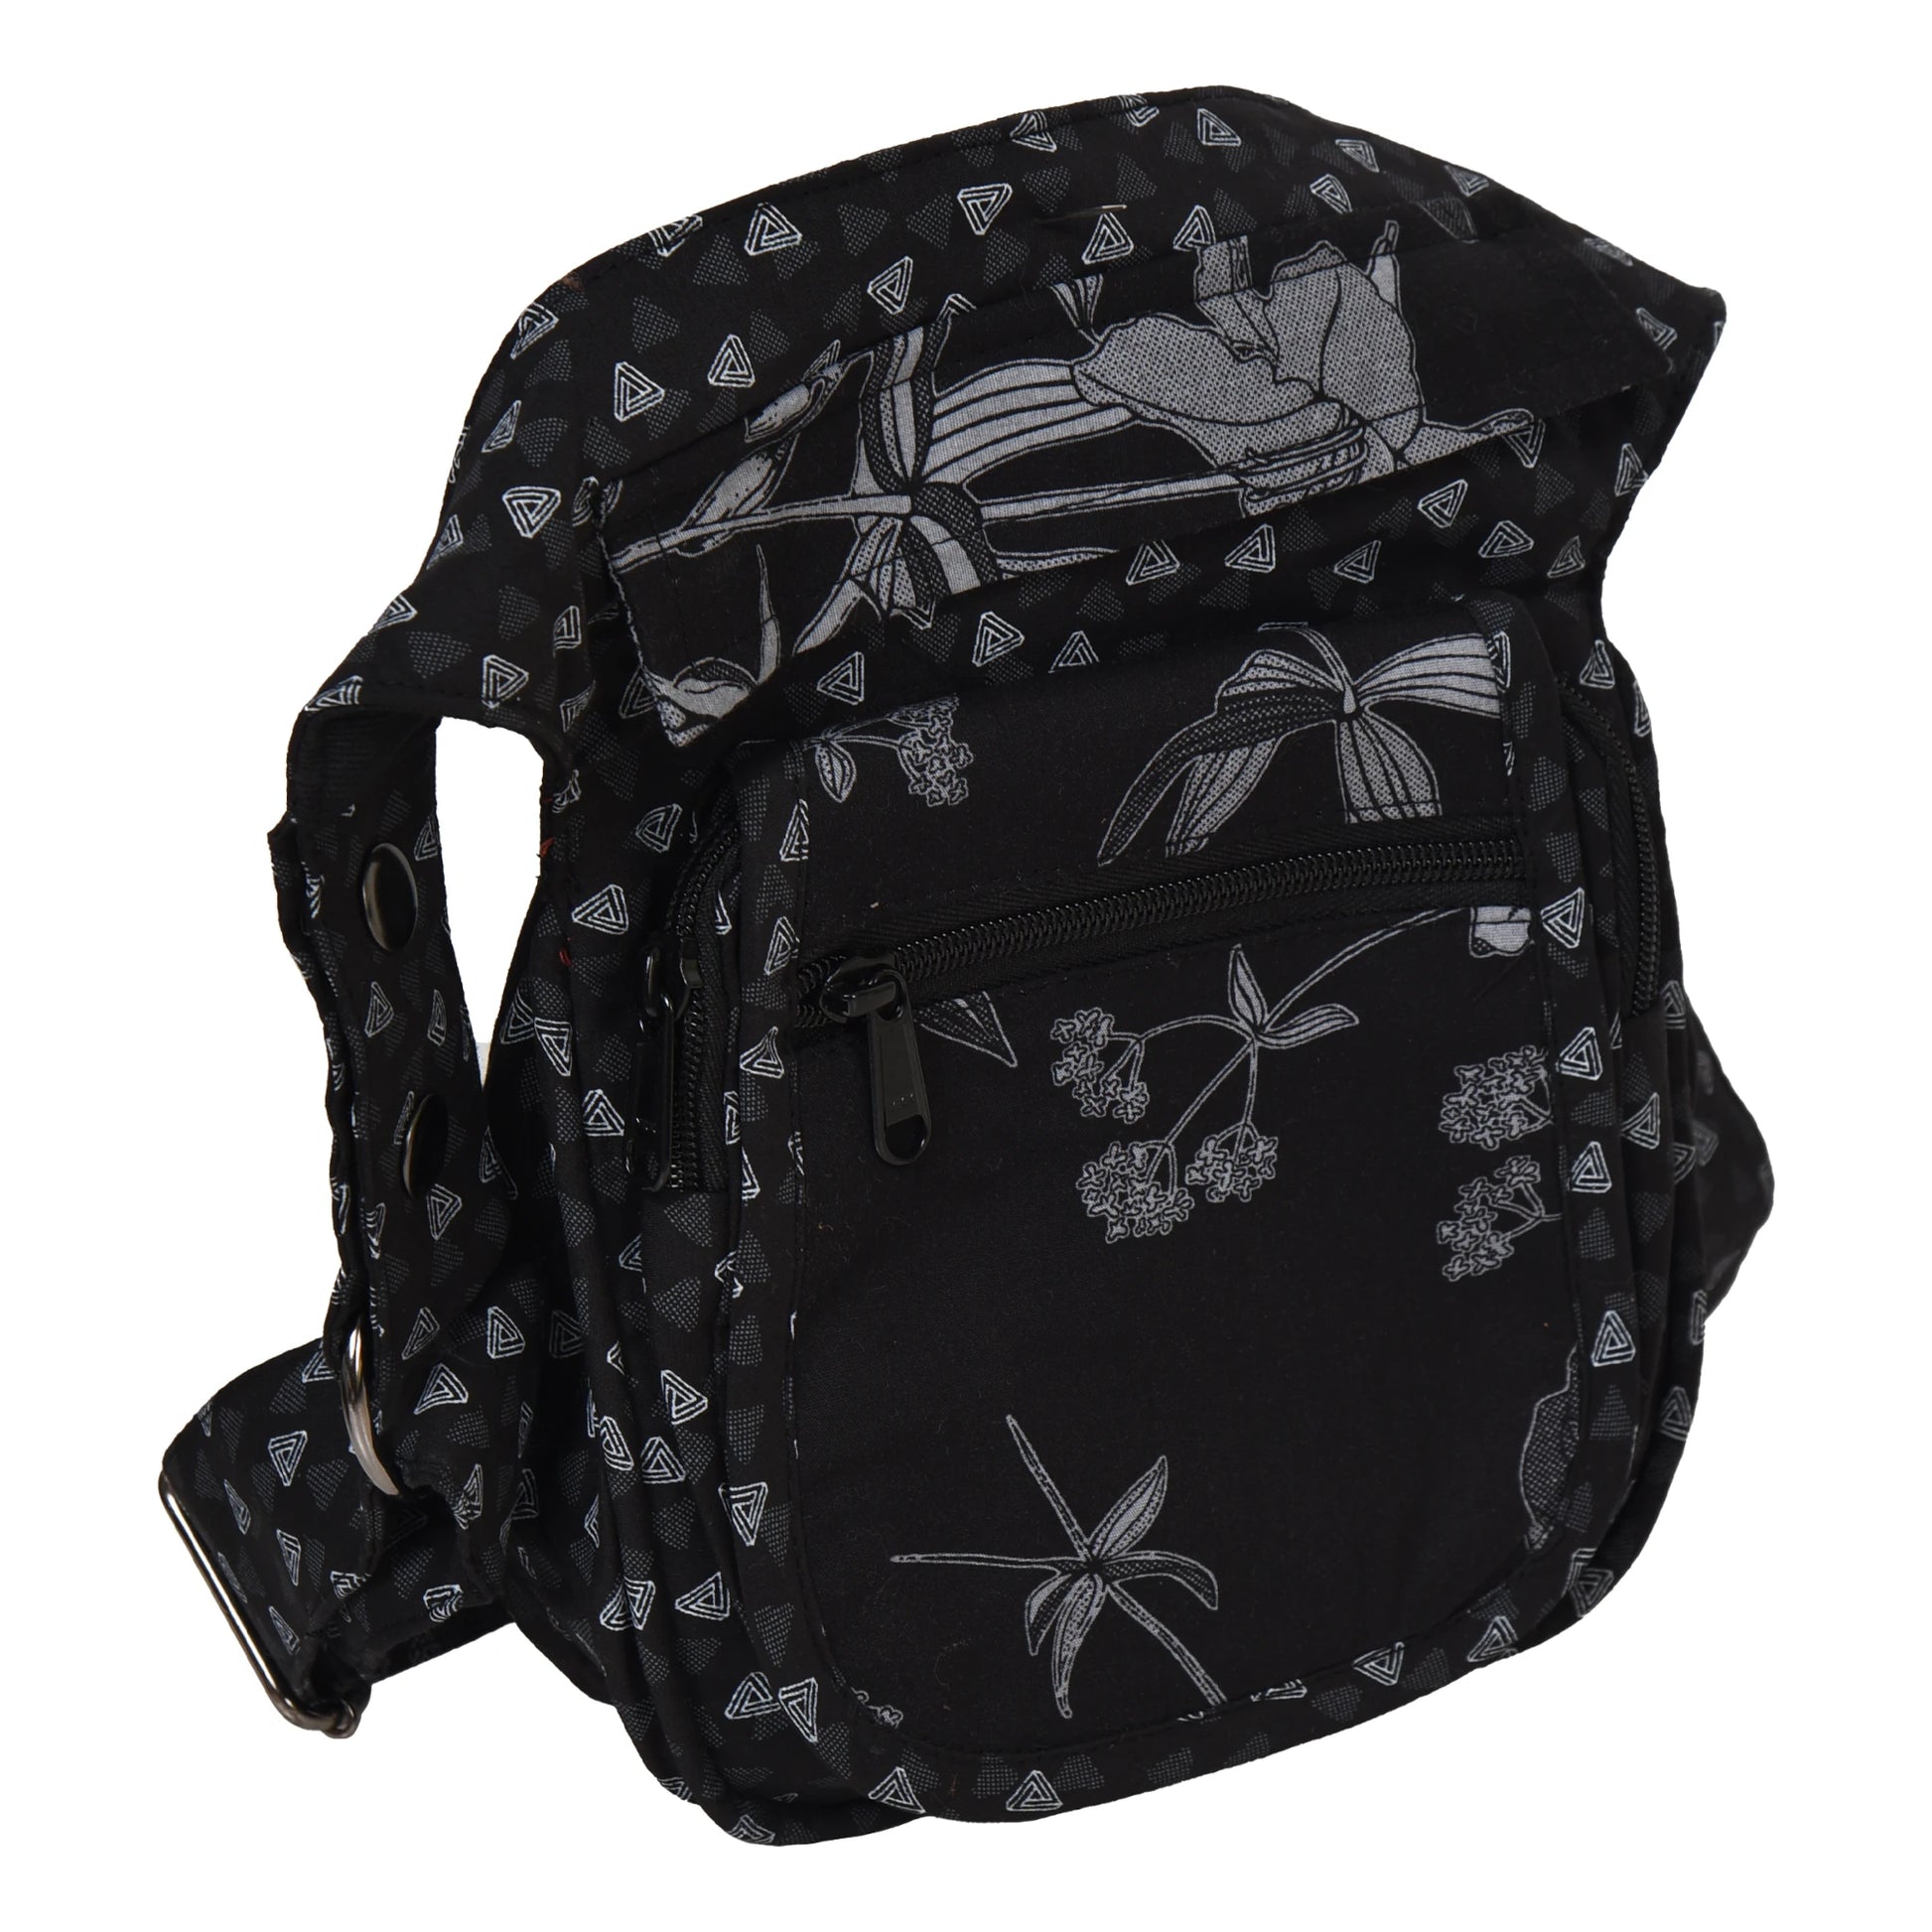 Schwarze Gürteltasche mit Lilien Motiv. Diese Tasche verfügt über 4 Reißverschlussfächer. Das Hauptfach hat einen Überlappungsschutz.